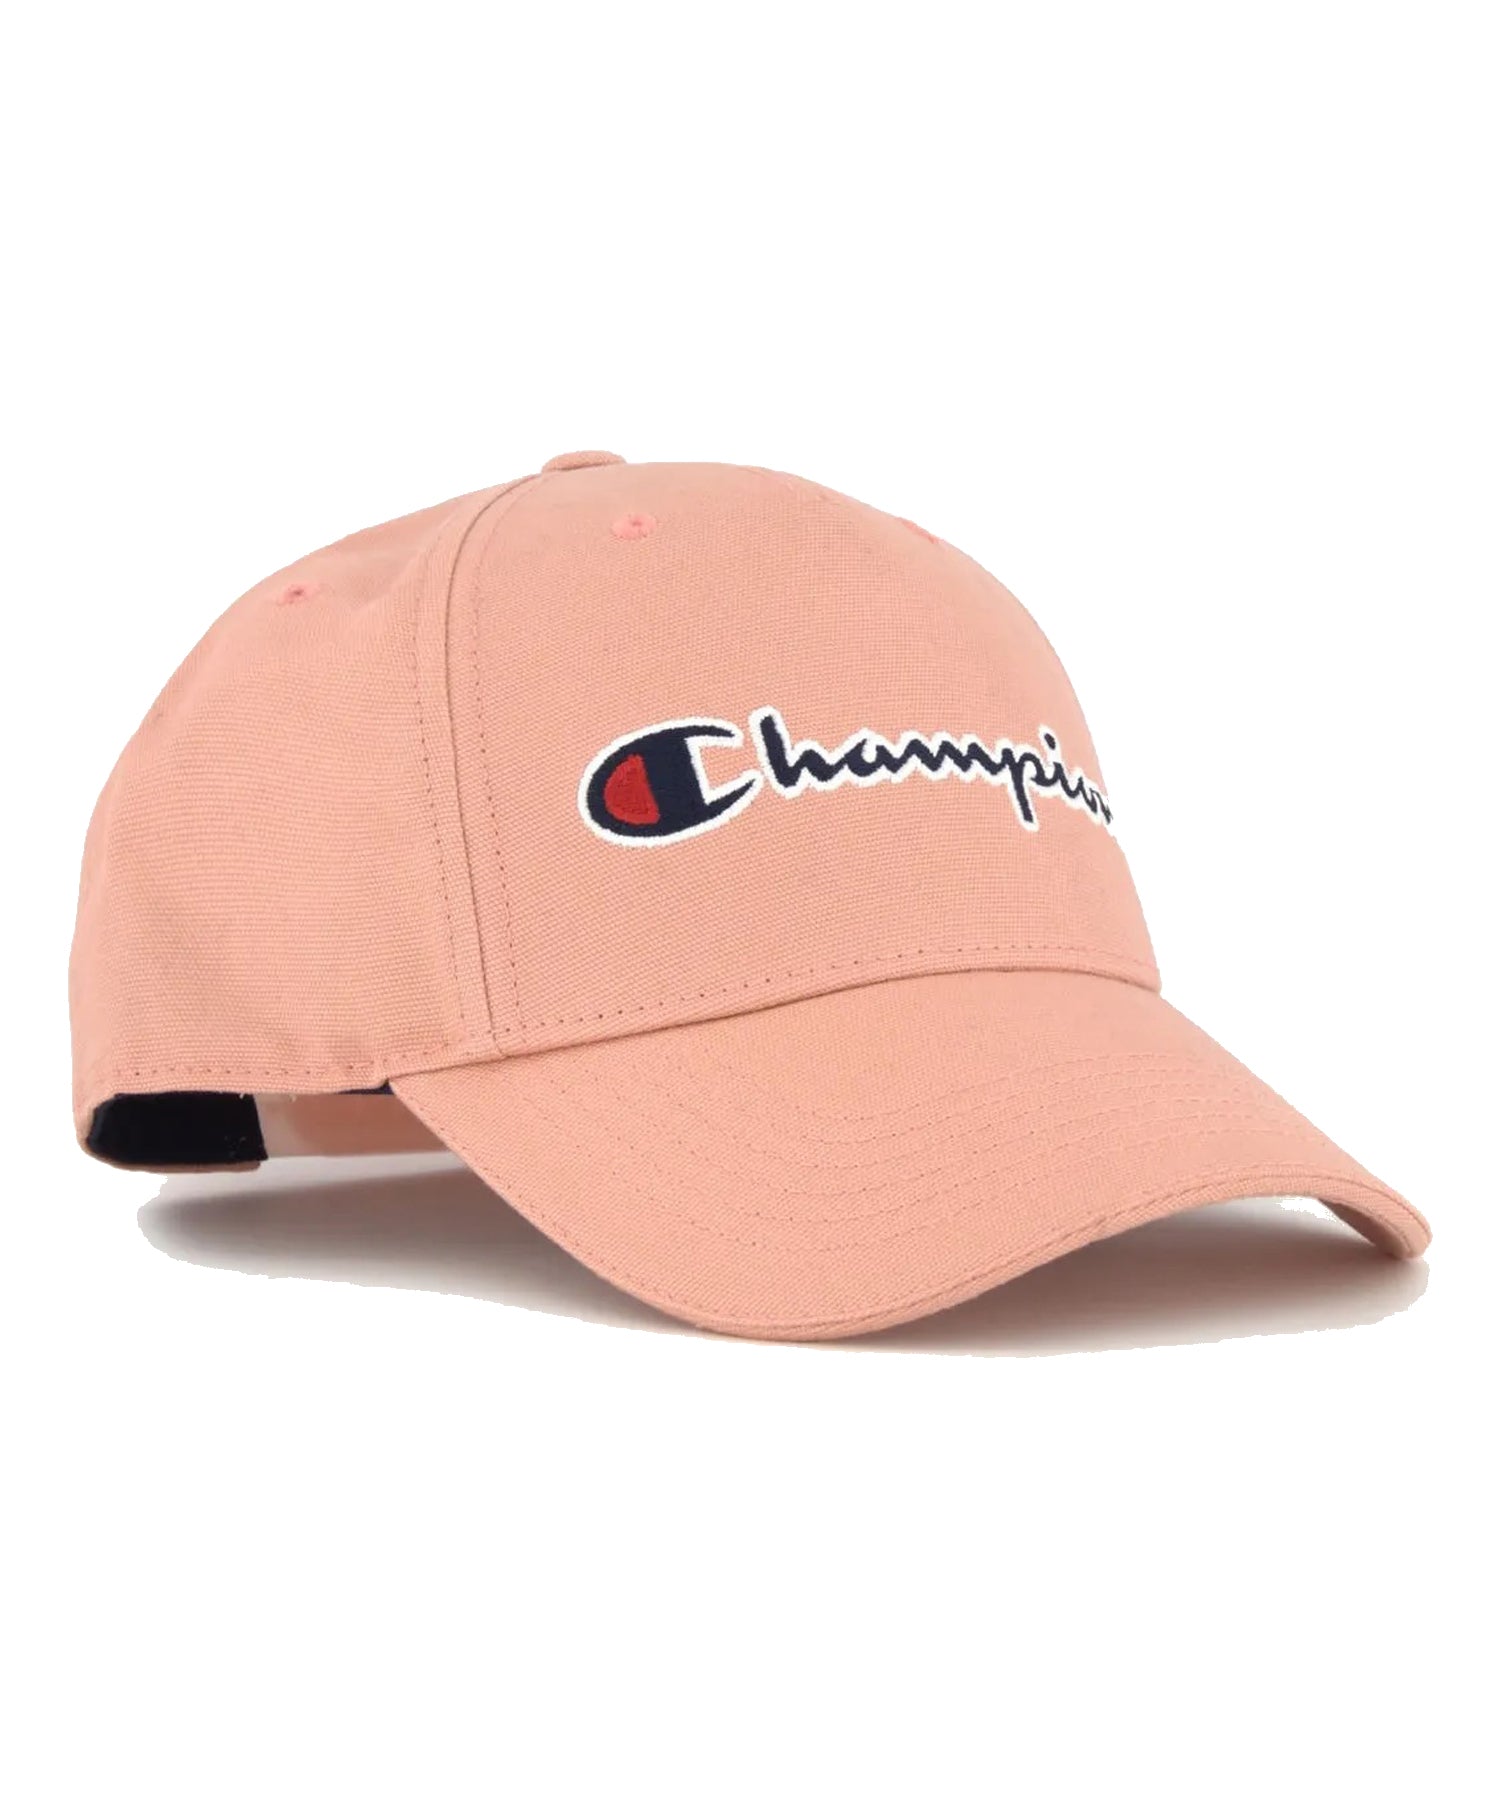 Gorra Champion tipo beisbol,color rosa y logo Champion en el frontal.